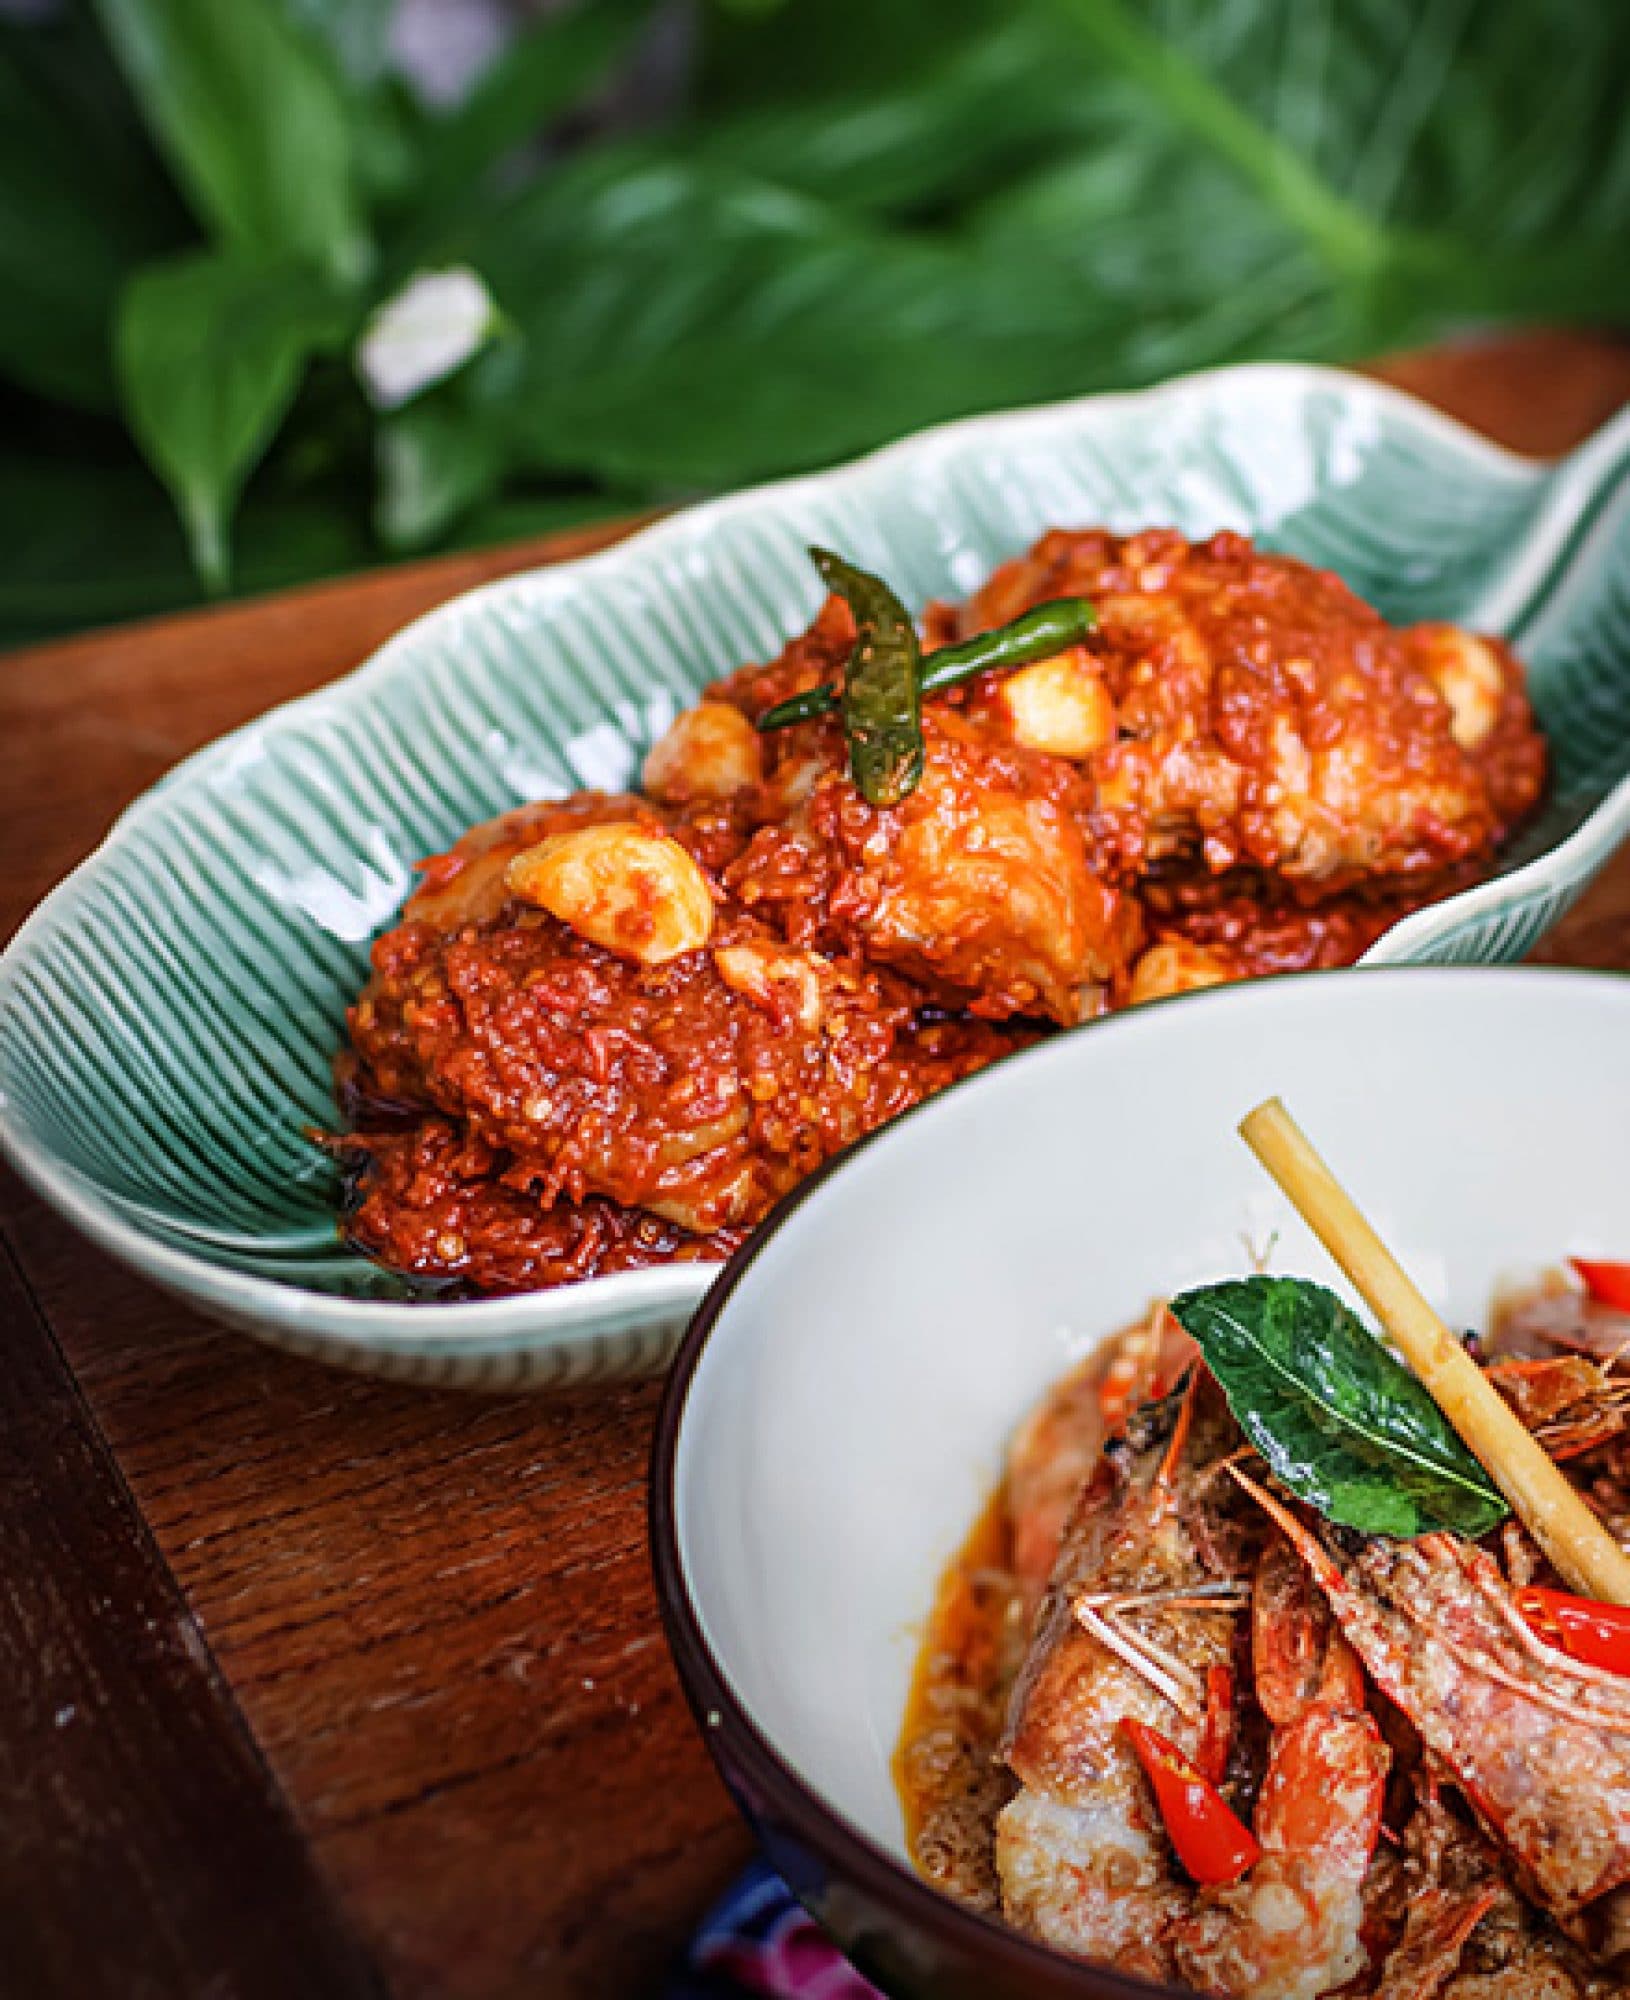 Singapore Food Festival 2020 ครั้งแรกในเอเชียกับเทศกาลอาหารออนไลน์ ชวนน้ำลายสอกันถึงบ้าน 9